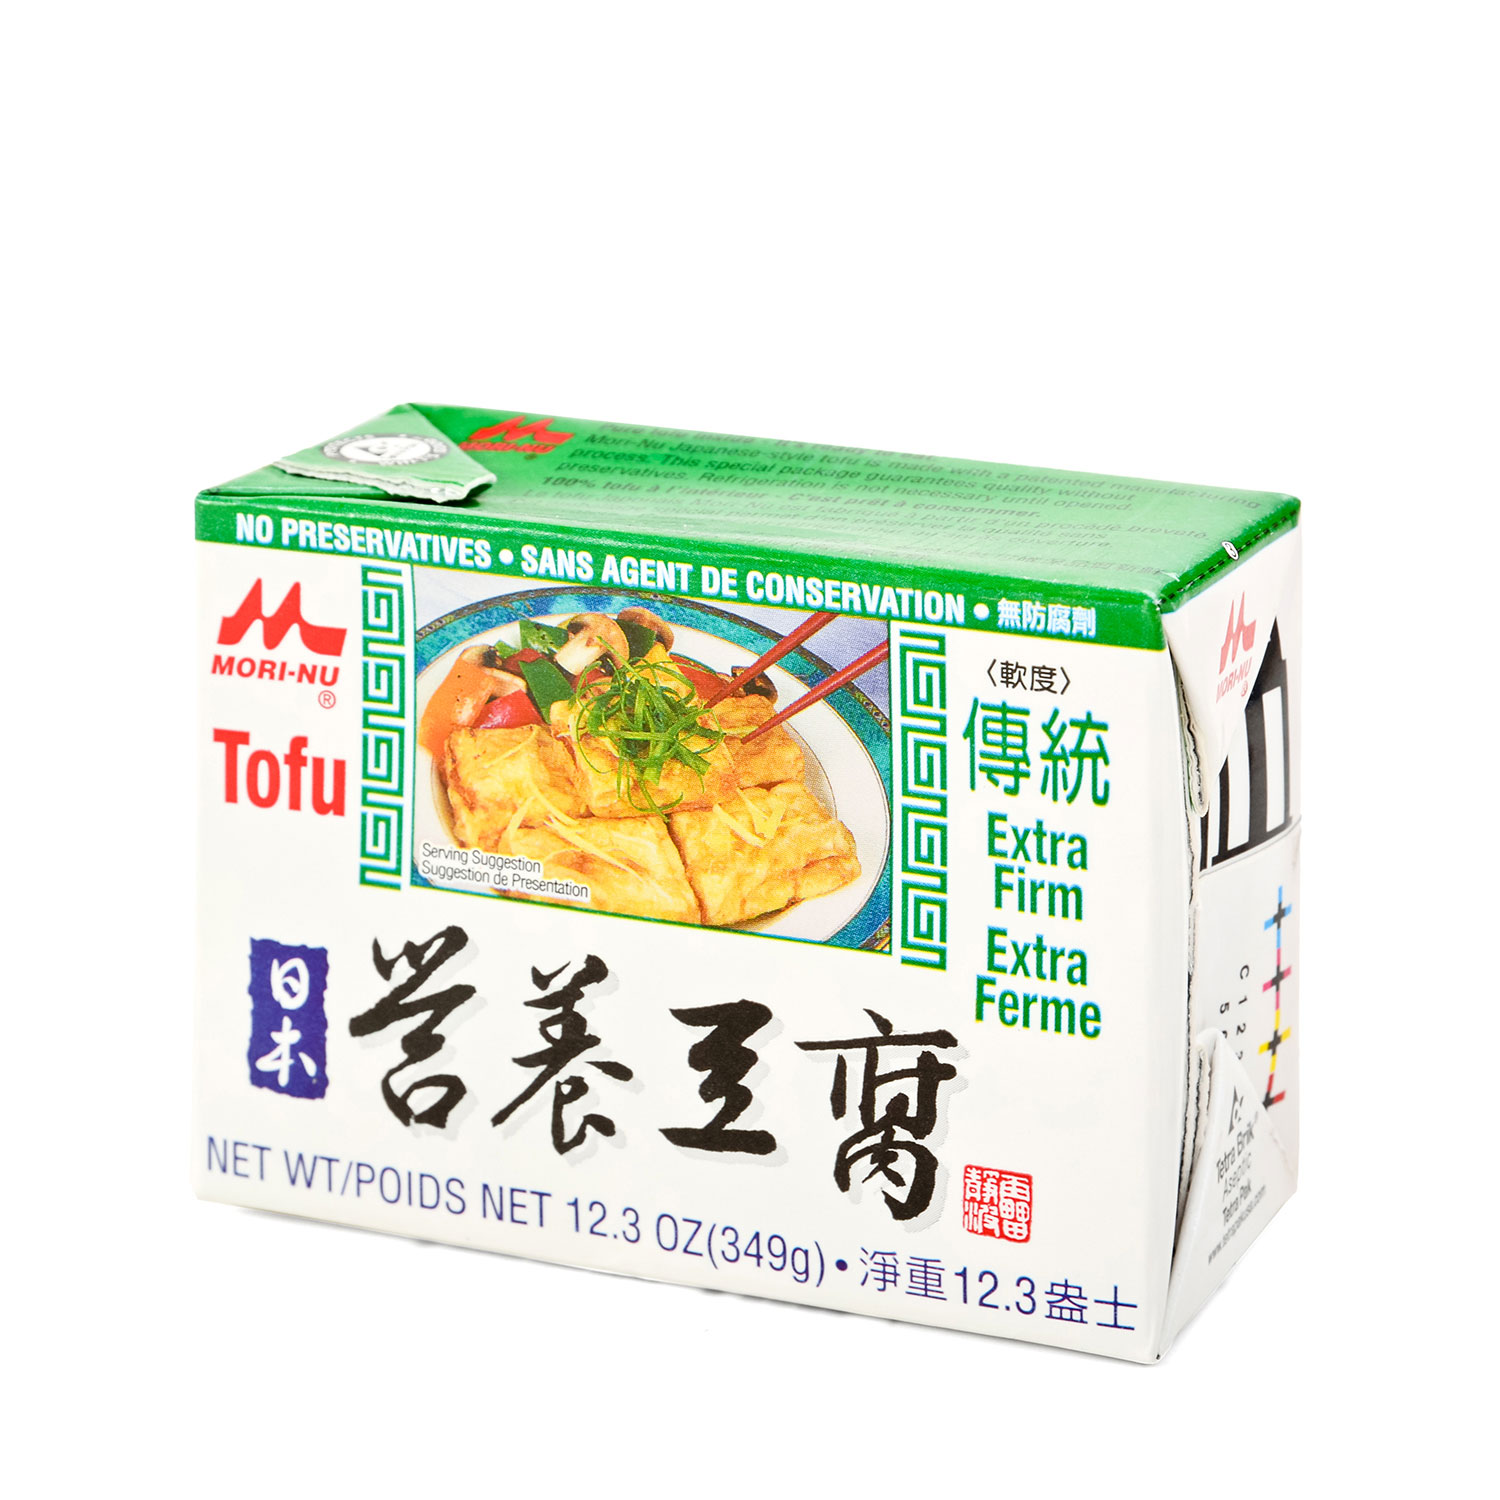 MORI-NU Tofu EX-Firm(Green) 349g - Tak Shing Hong